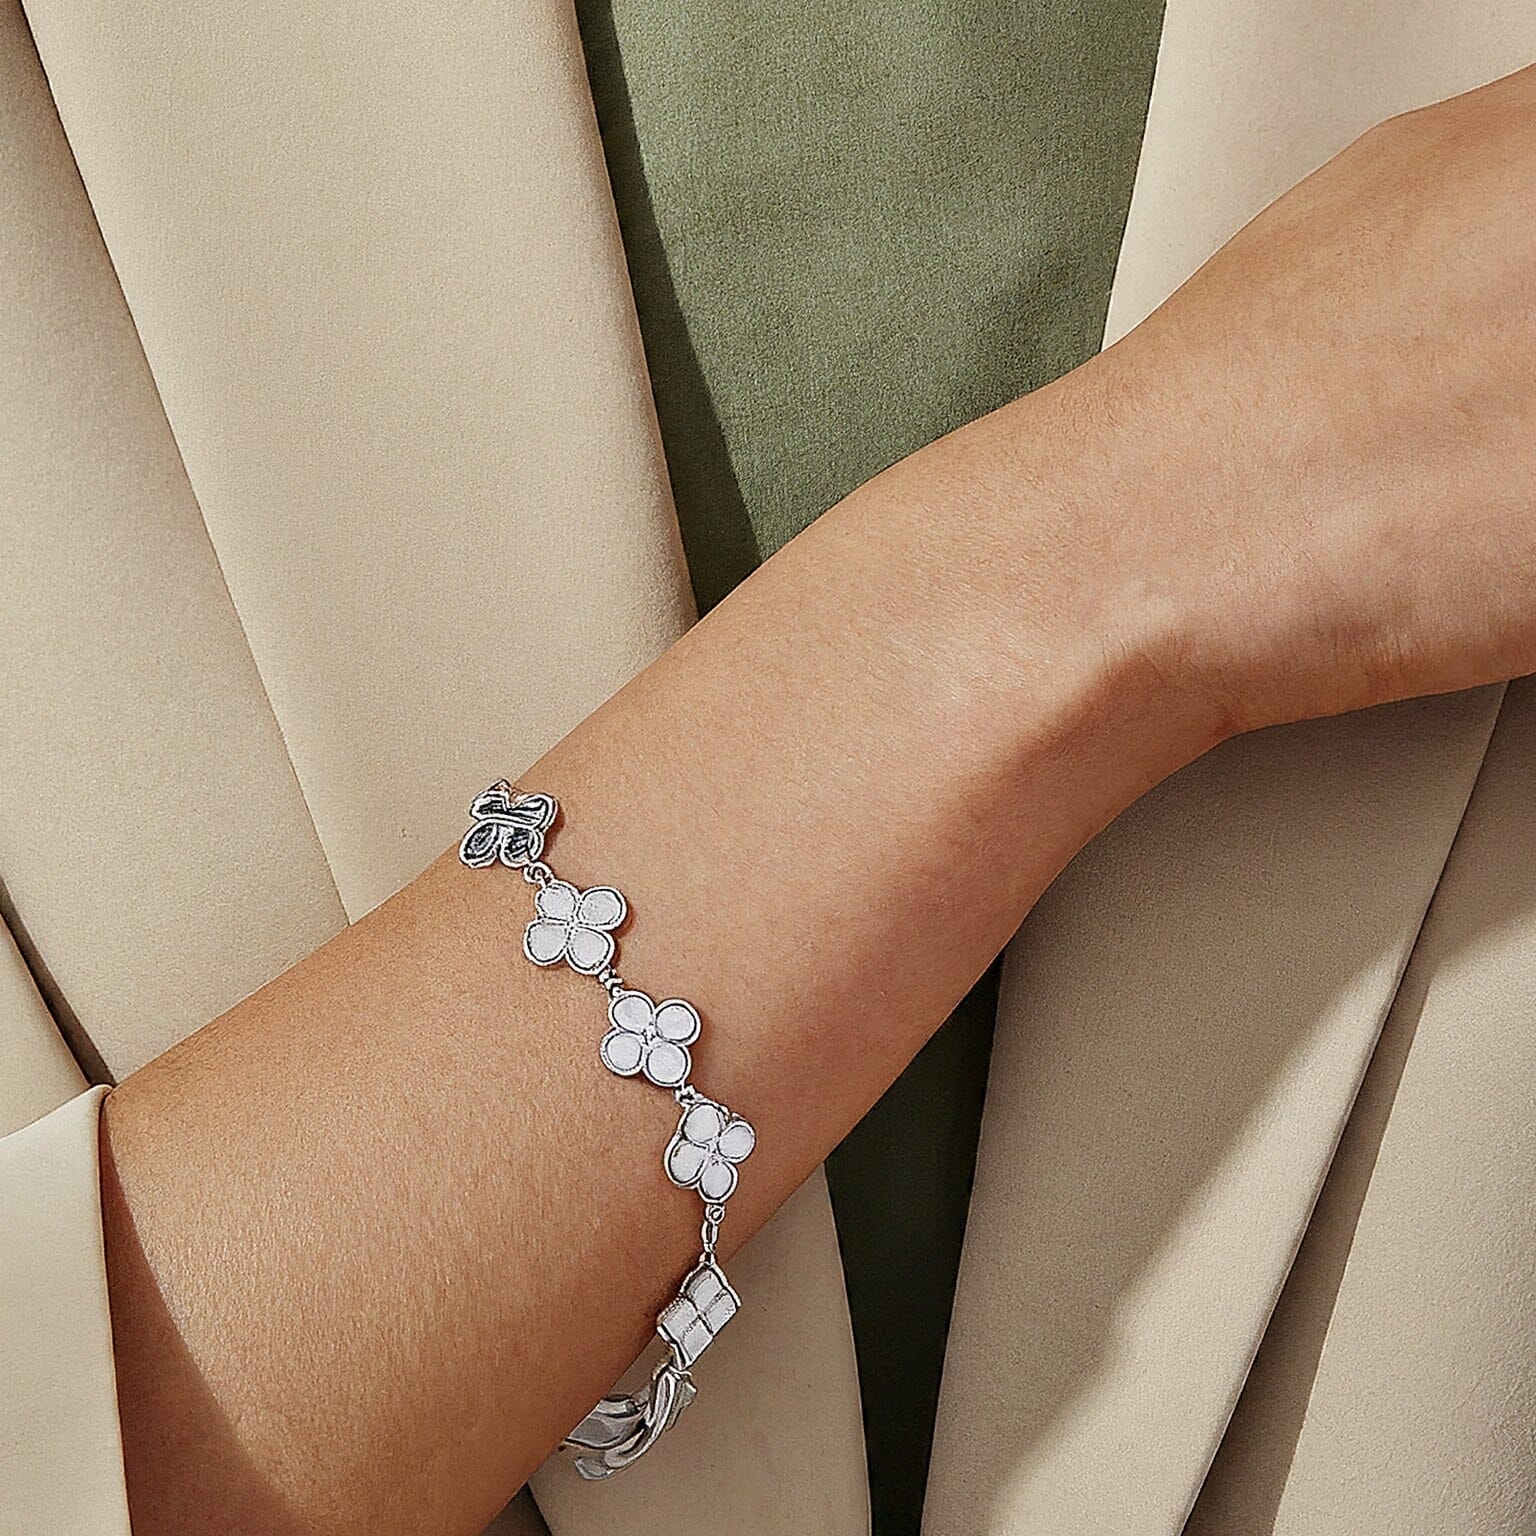 Clover Bracelet White Gold: A Gift of Love & Luxury